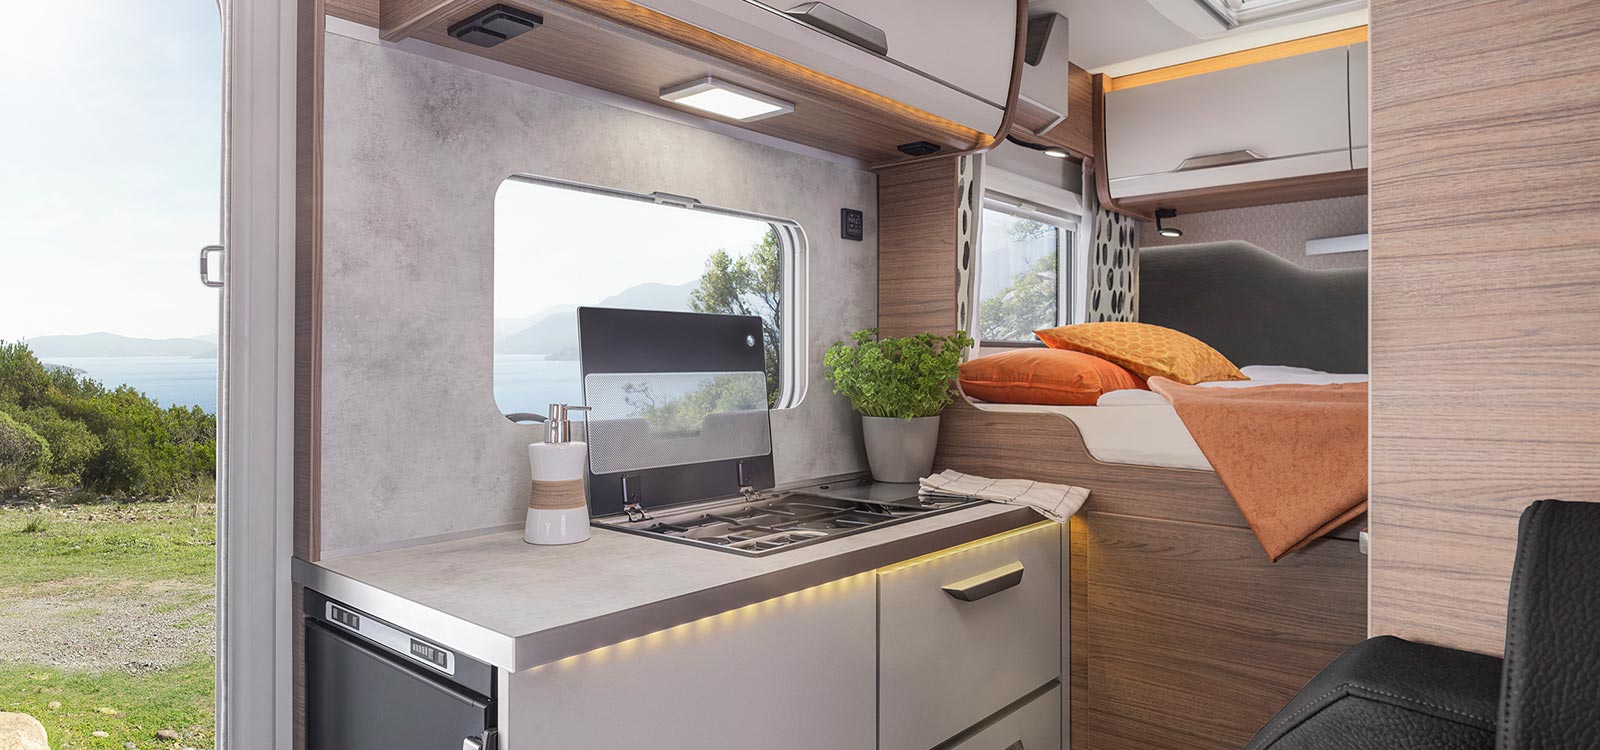 TOURER VAN 2023 mit platzsparender Kompaktküche mit Kompressorkühlschrank, 2‐Flamm‐Kocher, Spüle und viel Stauraum